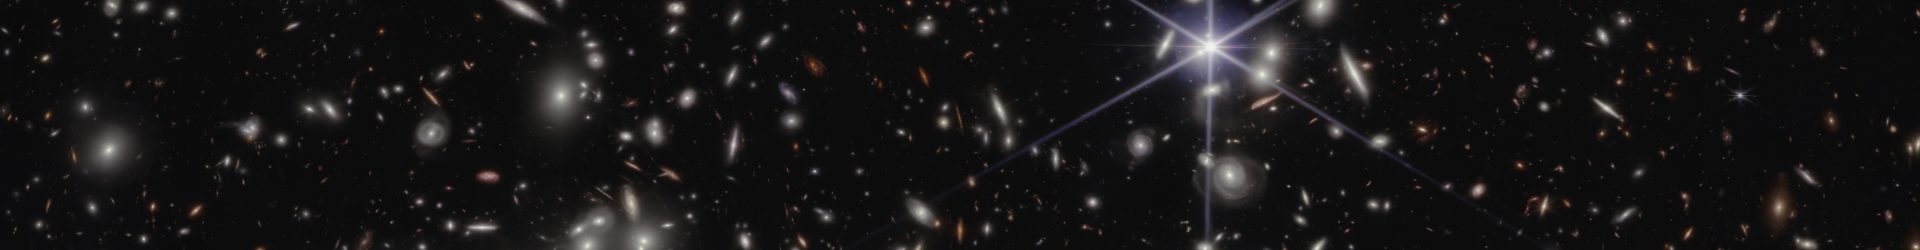 Ecco le galassie che hanno reionizzato l’universo